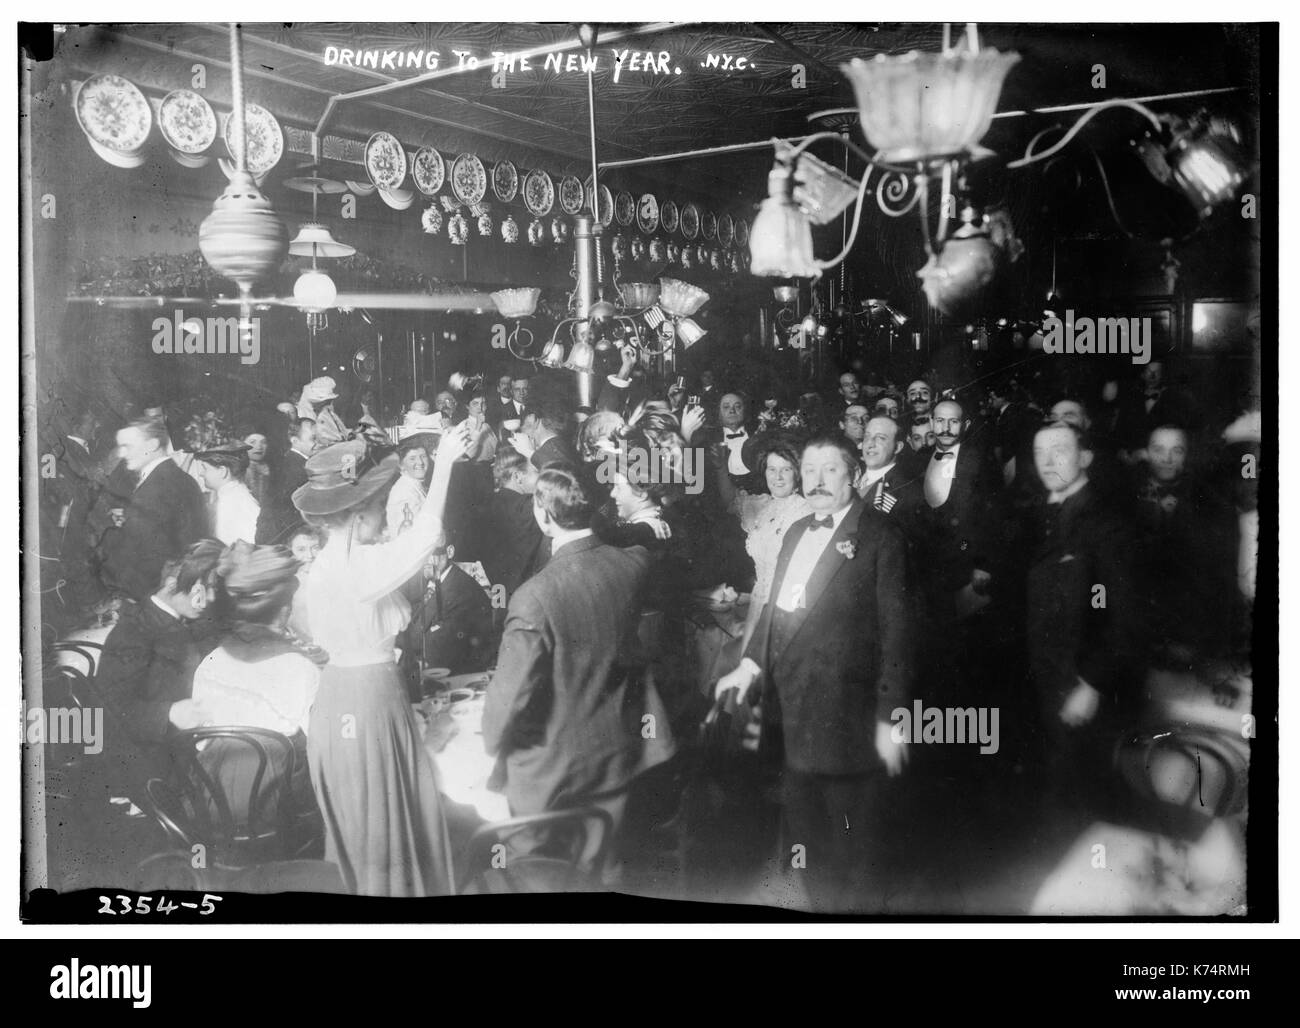 1911-1915 - Bien-habillé joyeux des décideurs de prendre un verre à la nouvelle année. New York, vers 1911. Banque D'Images